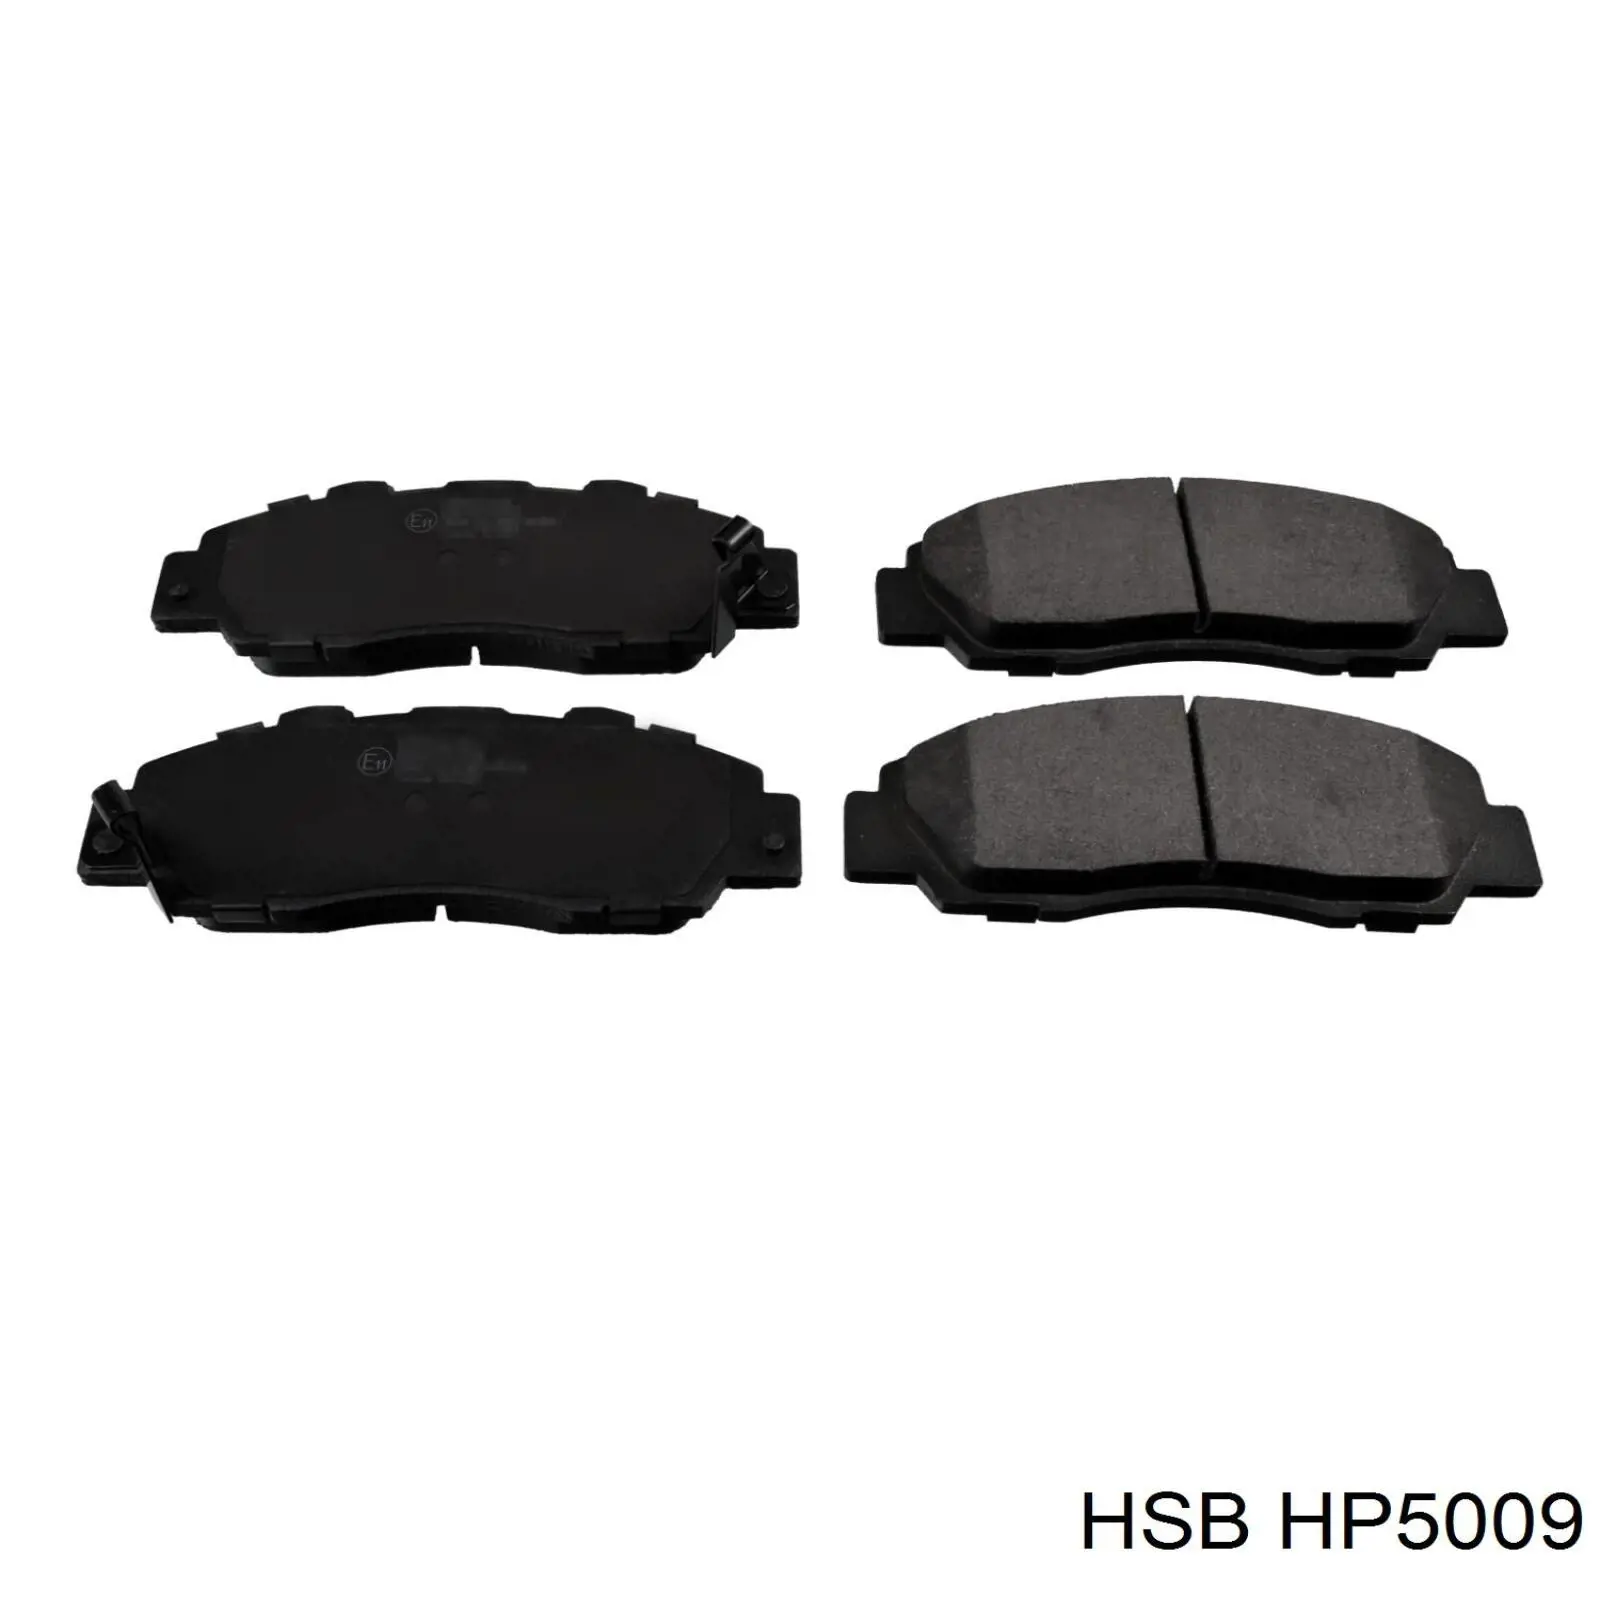 HP5009 HSB pastillas de freno delanteras